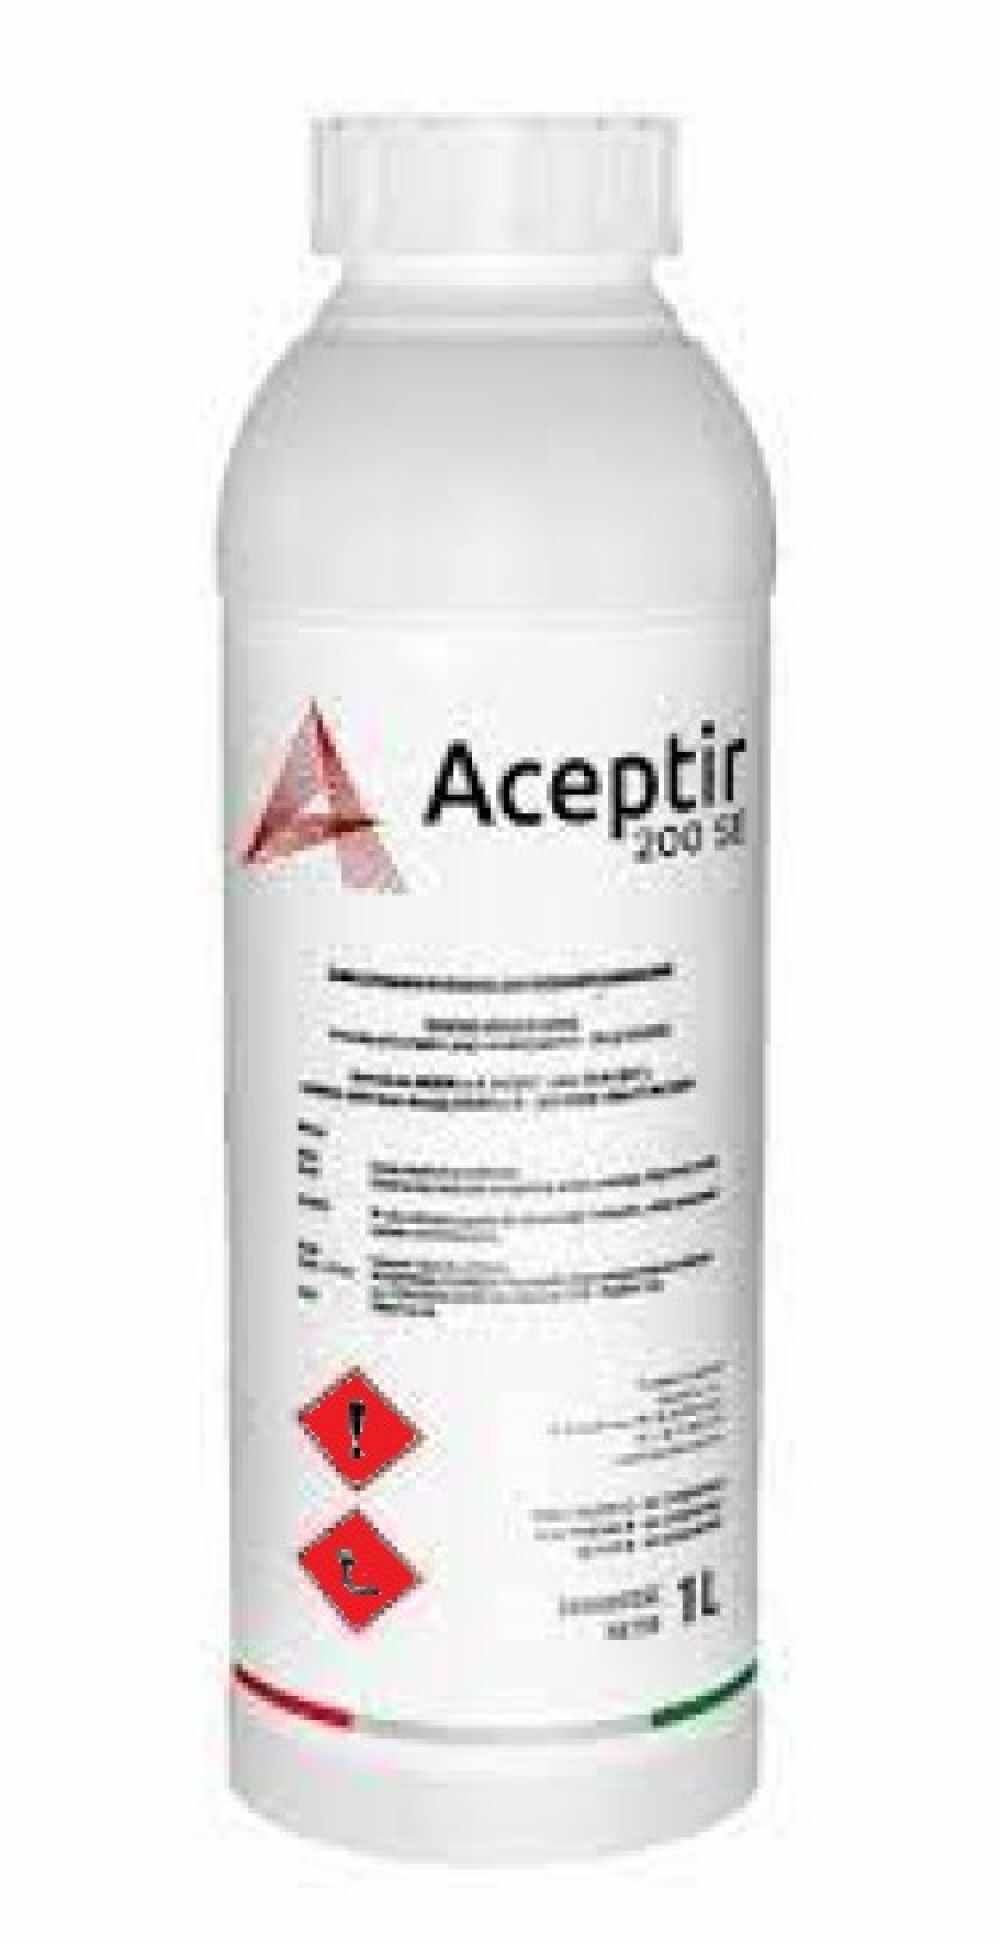 Insecticid Aceptir 200 SE 1 l